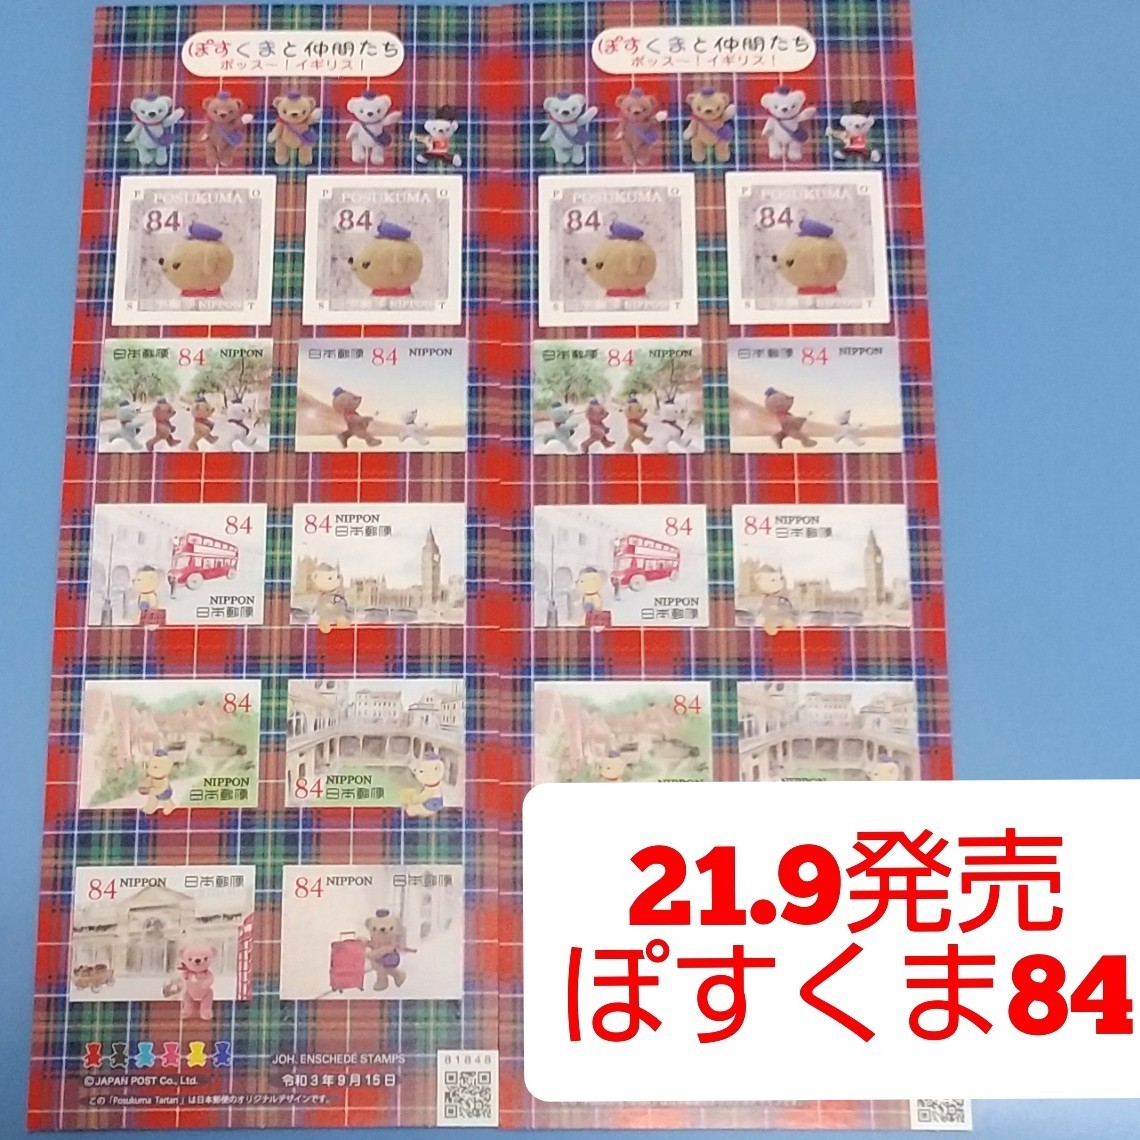 21.9発売 ぽすくま 84円 シール切手 2シート 1680円分  シール式切手 記念切手